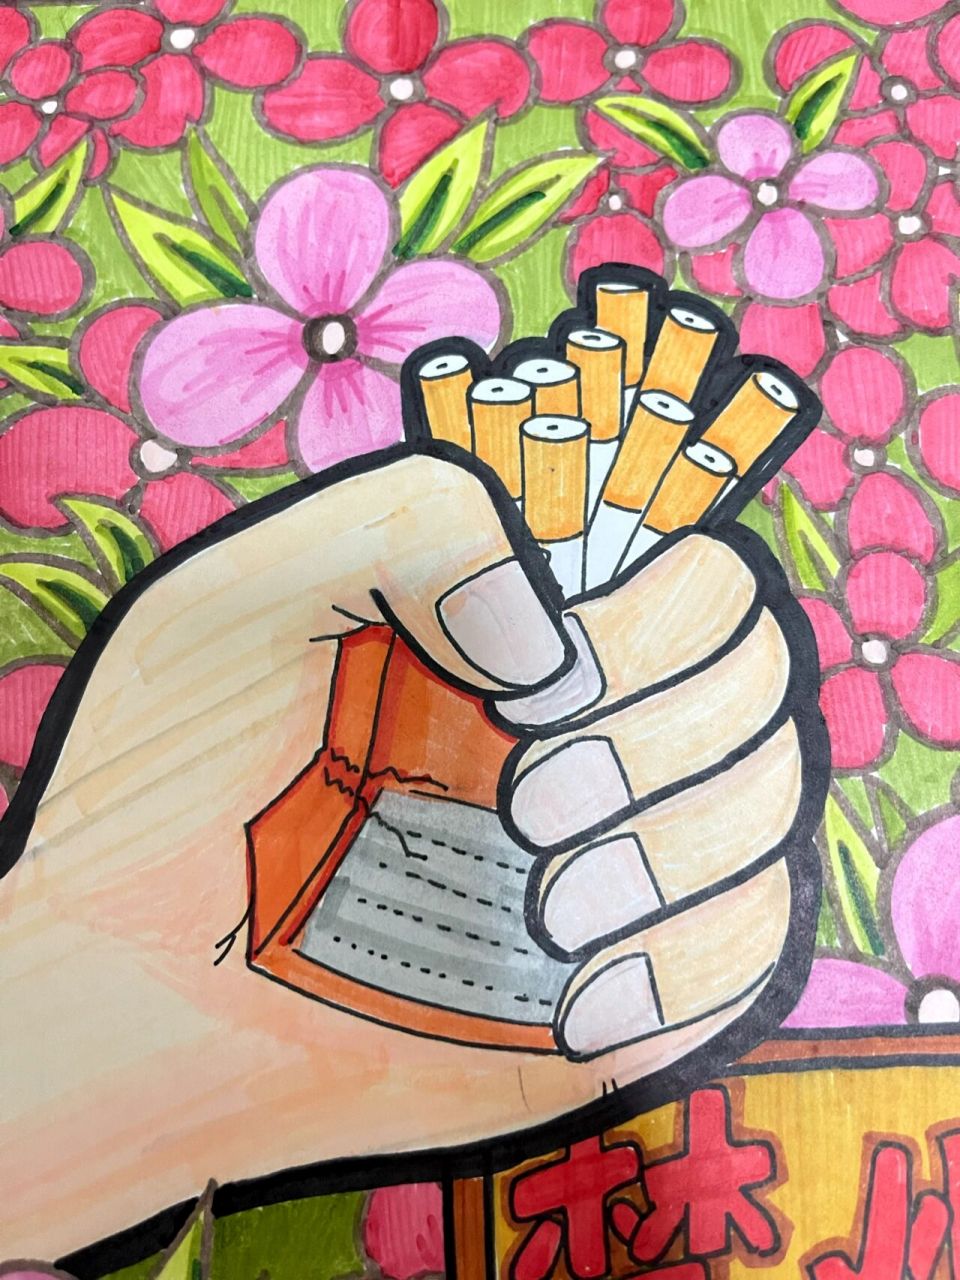 小学生禁烟绘画 手绘图片